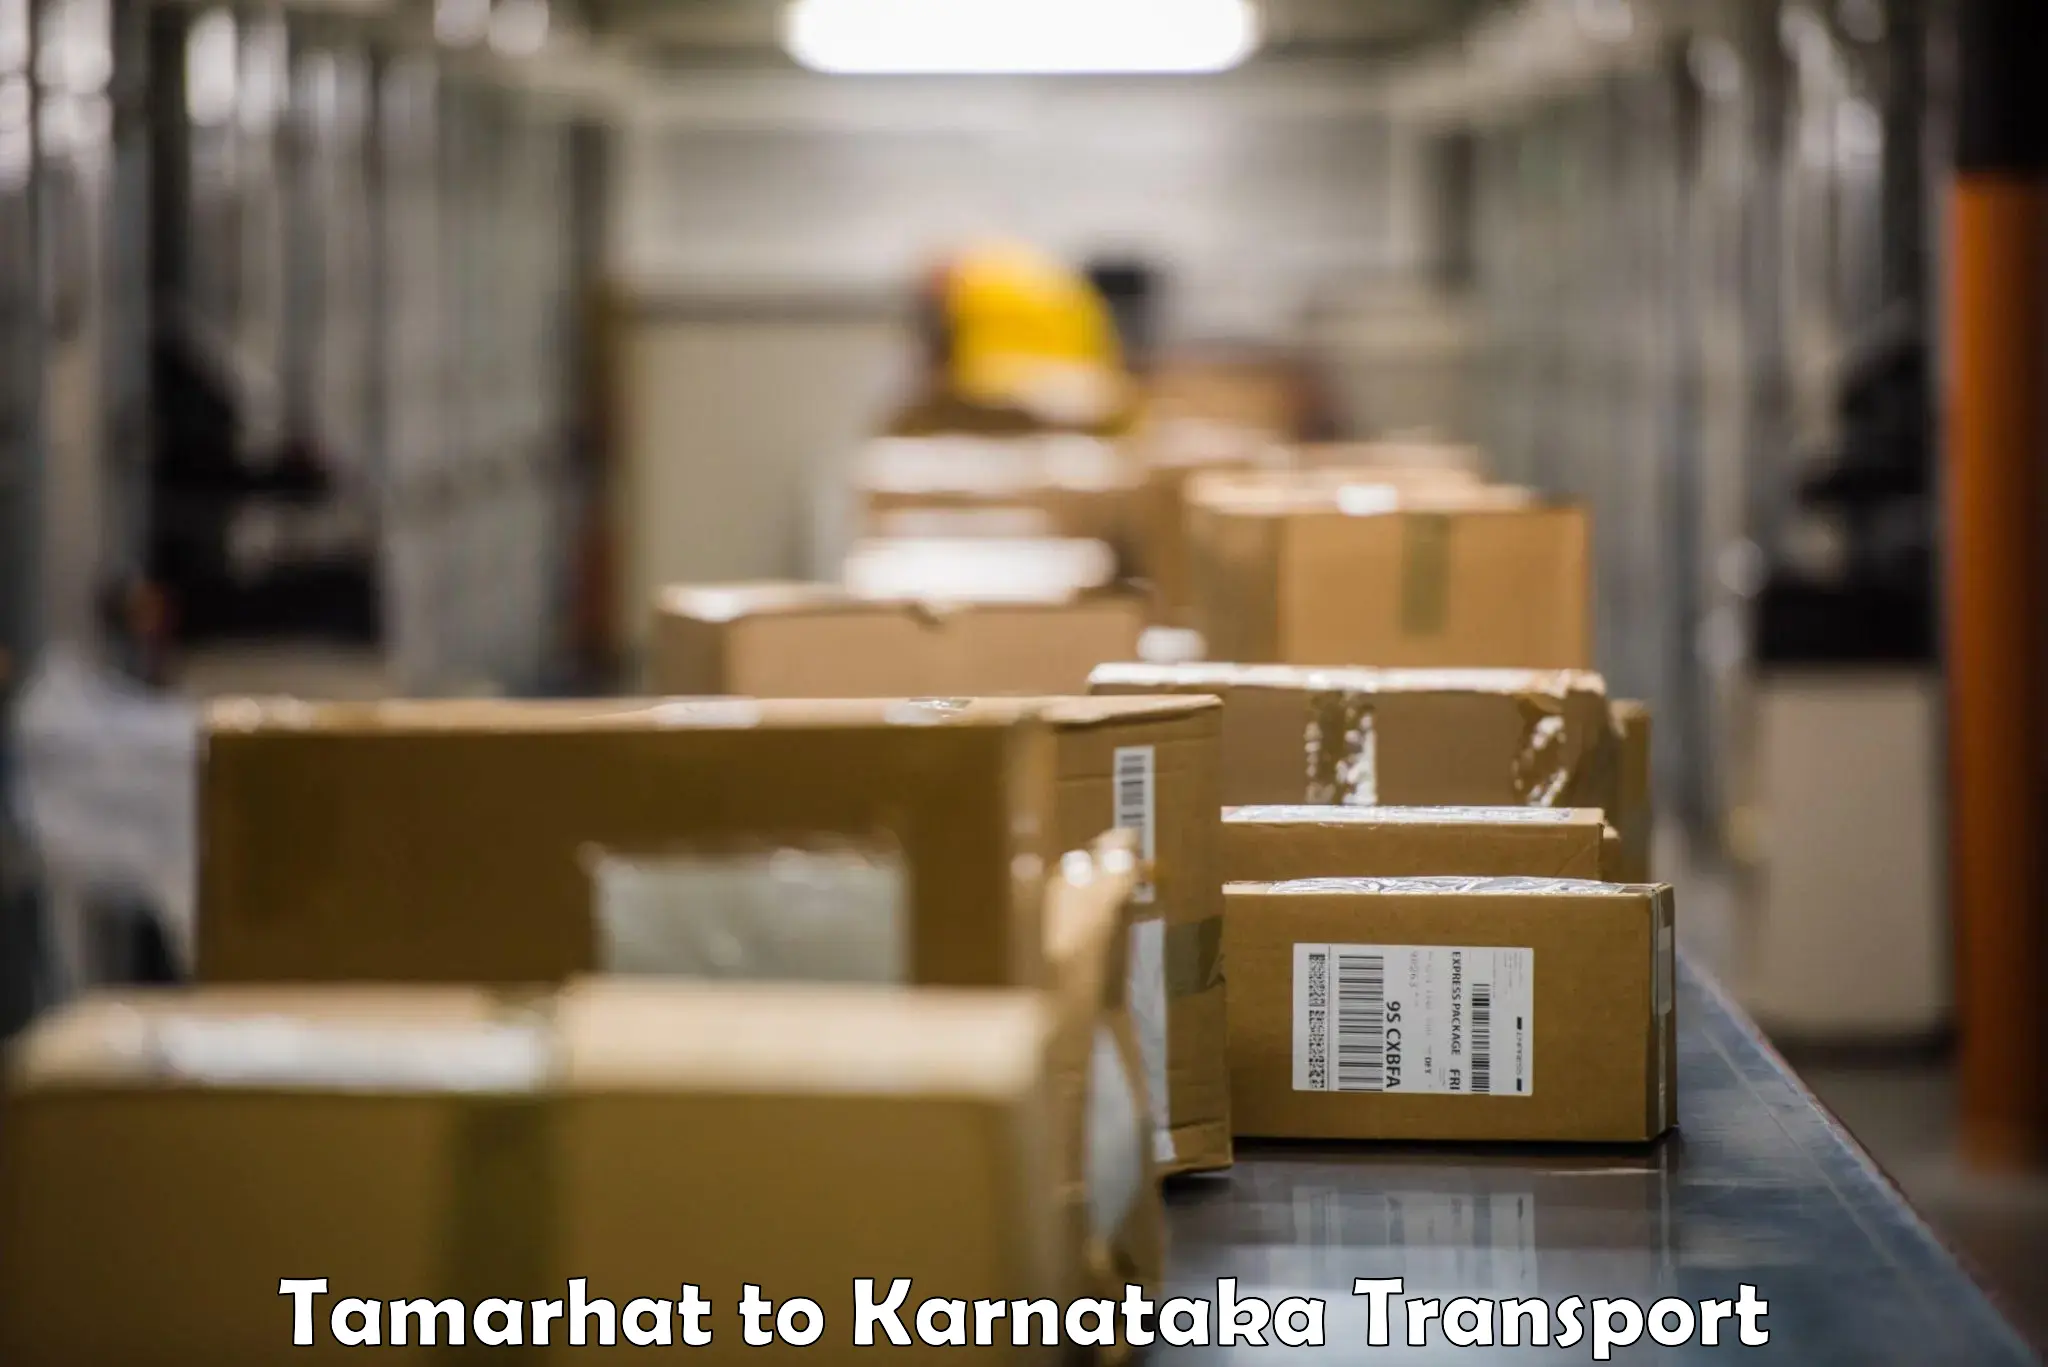 Pick up transport service Tamarhat to Kalaburagi